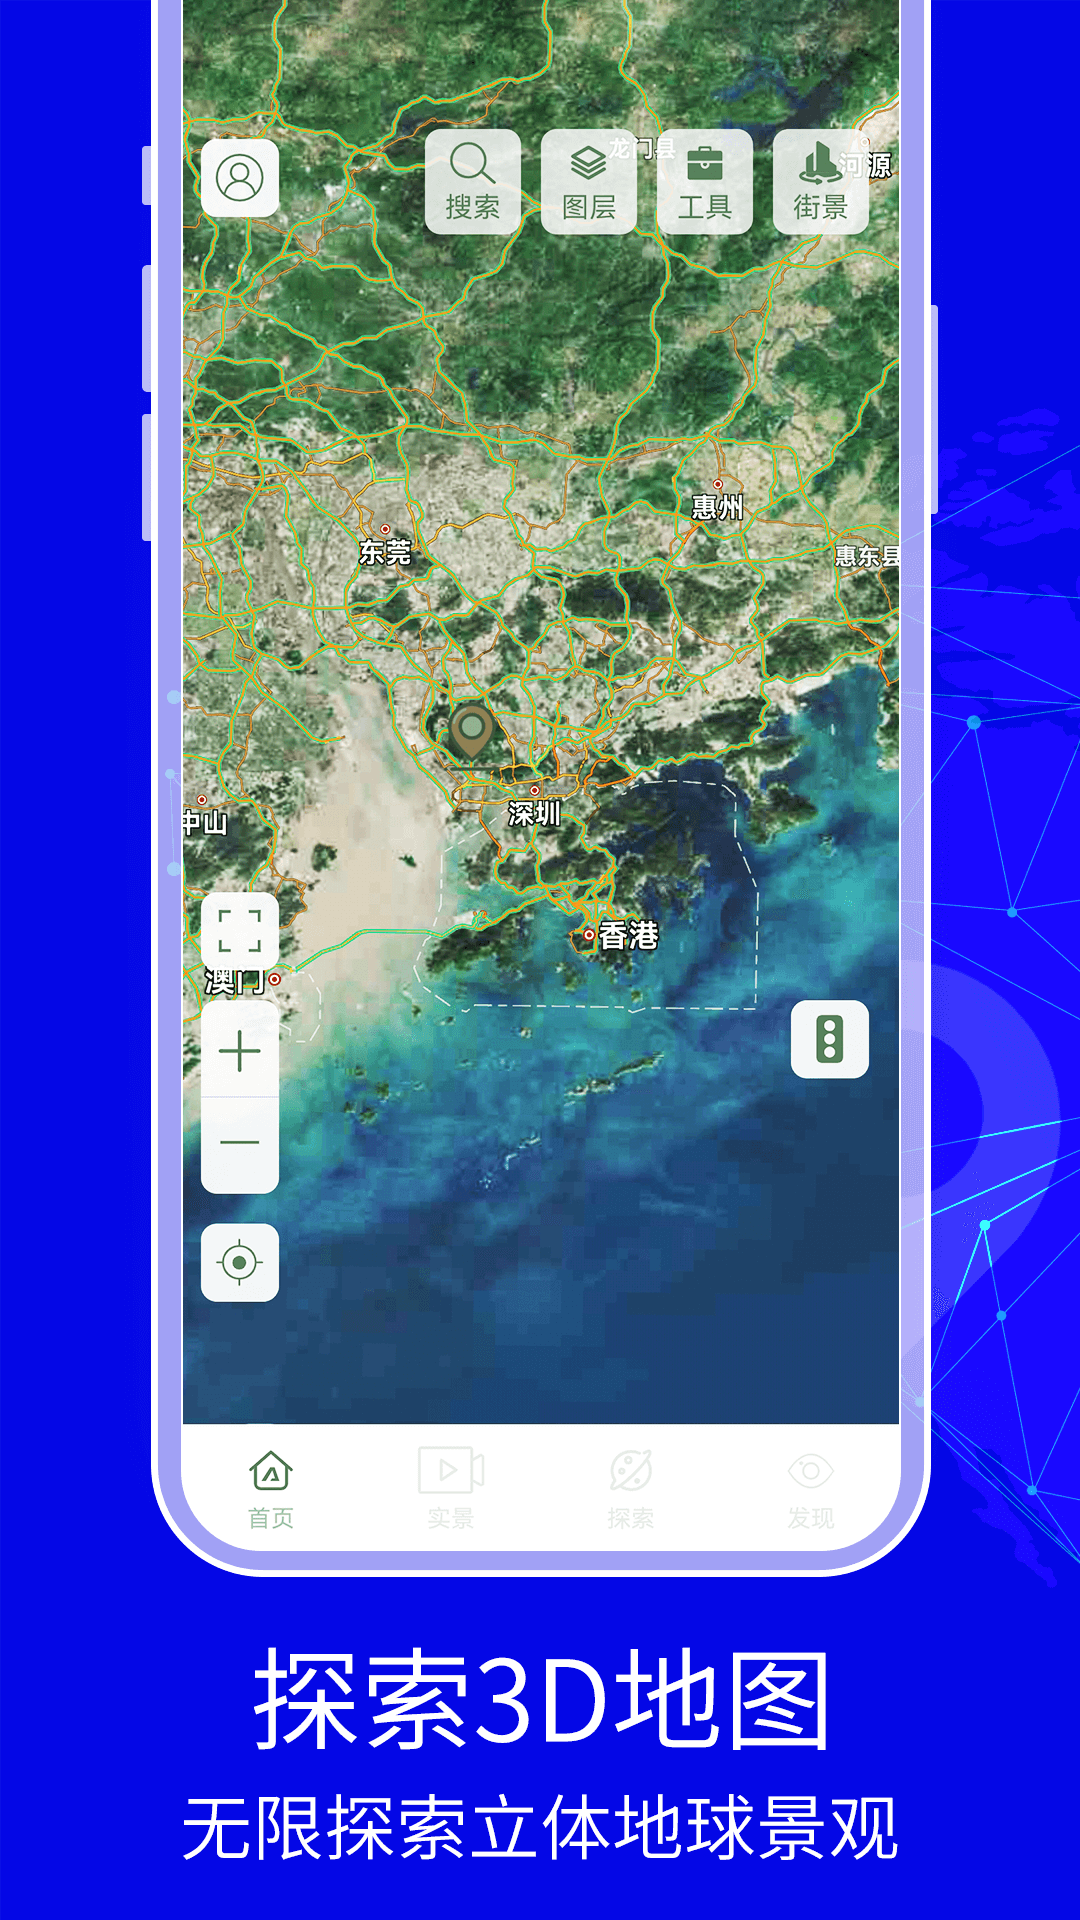 3D天眼卫星实景地图app下载免费高清版图1: